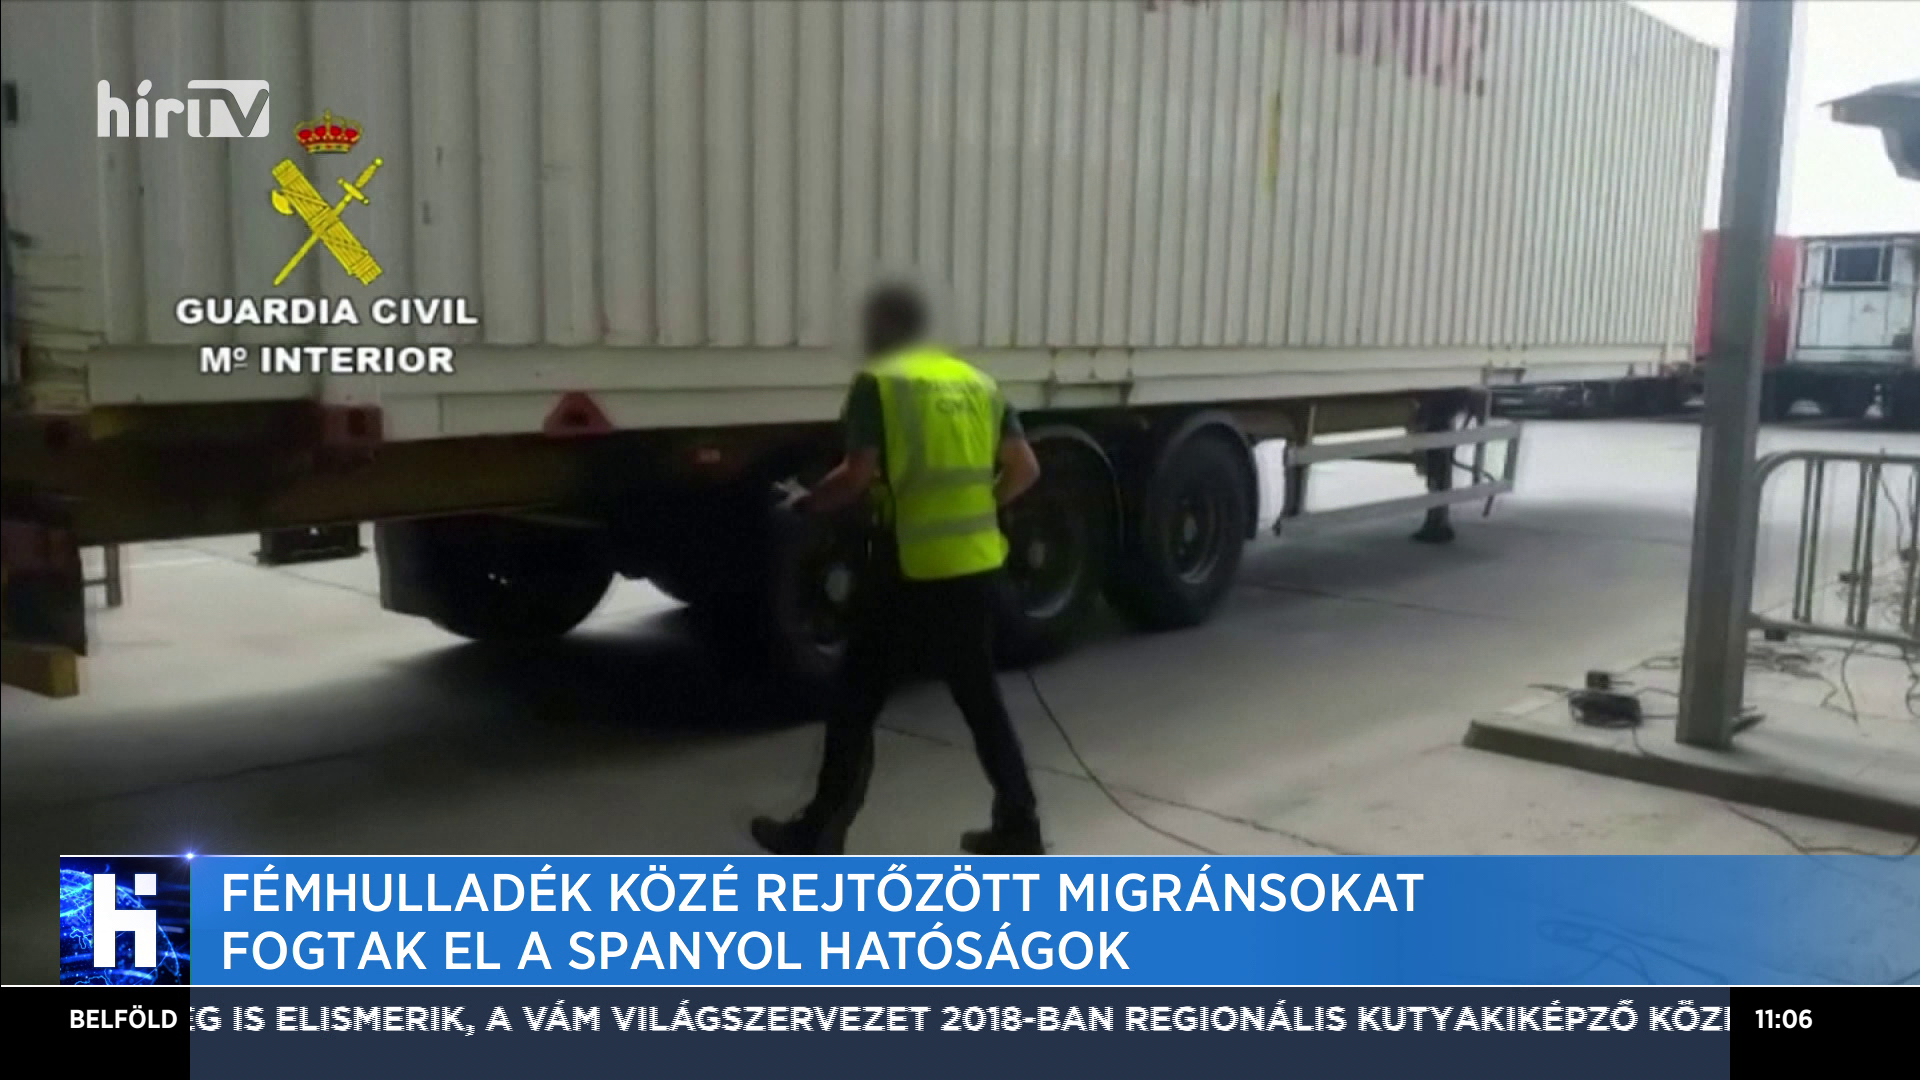 Fémhulladék közé rejtőzött migránsokat fogtak el a spanyol hatóságok